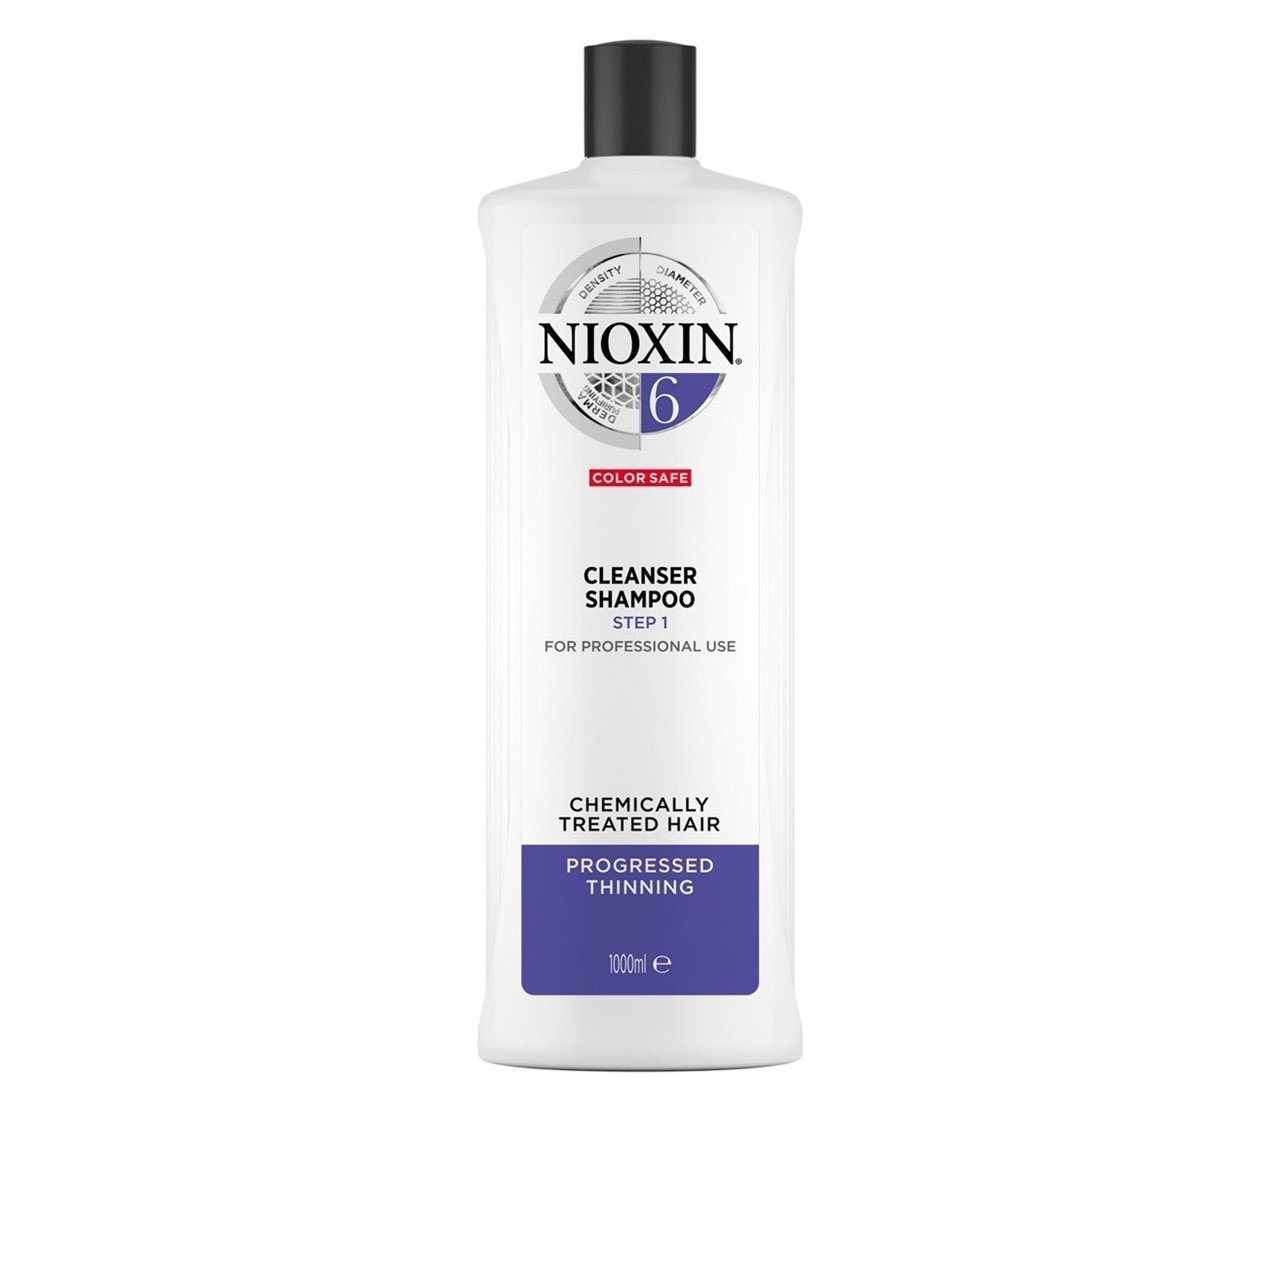 Stevenson hende strejke Buy Nioxin System 6 Cleanser Shampoo · USA